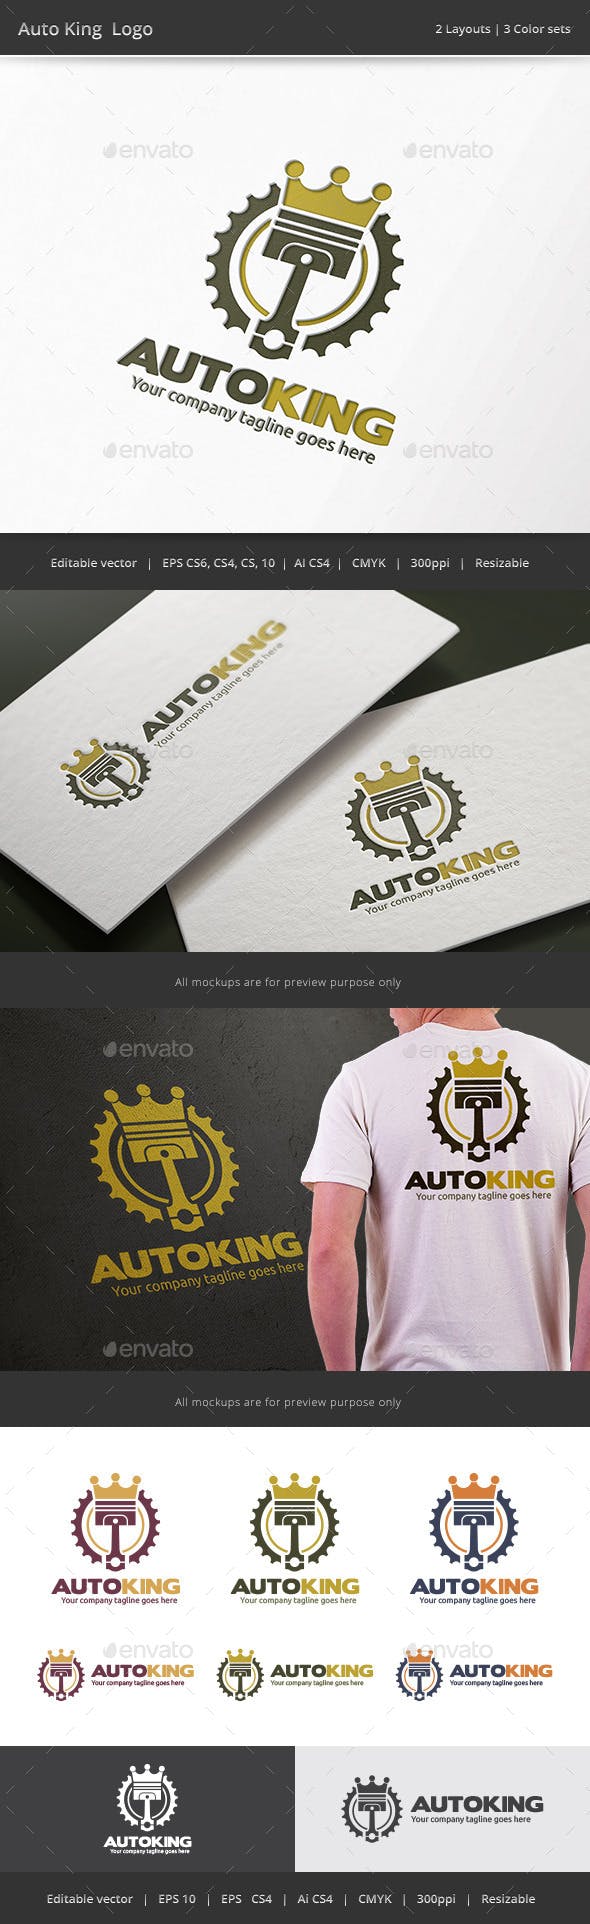 Auto King Logo - Auto King Piston Logo by WheelieMonkey | GraphicRiver